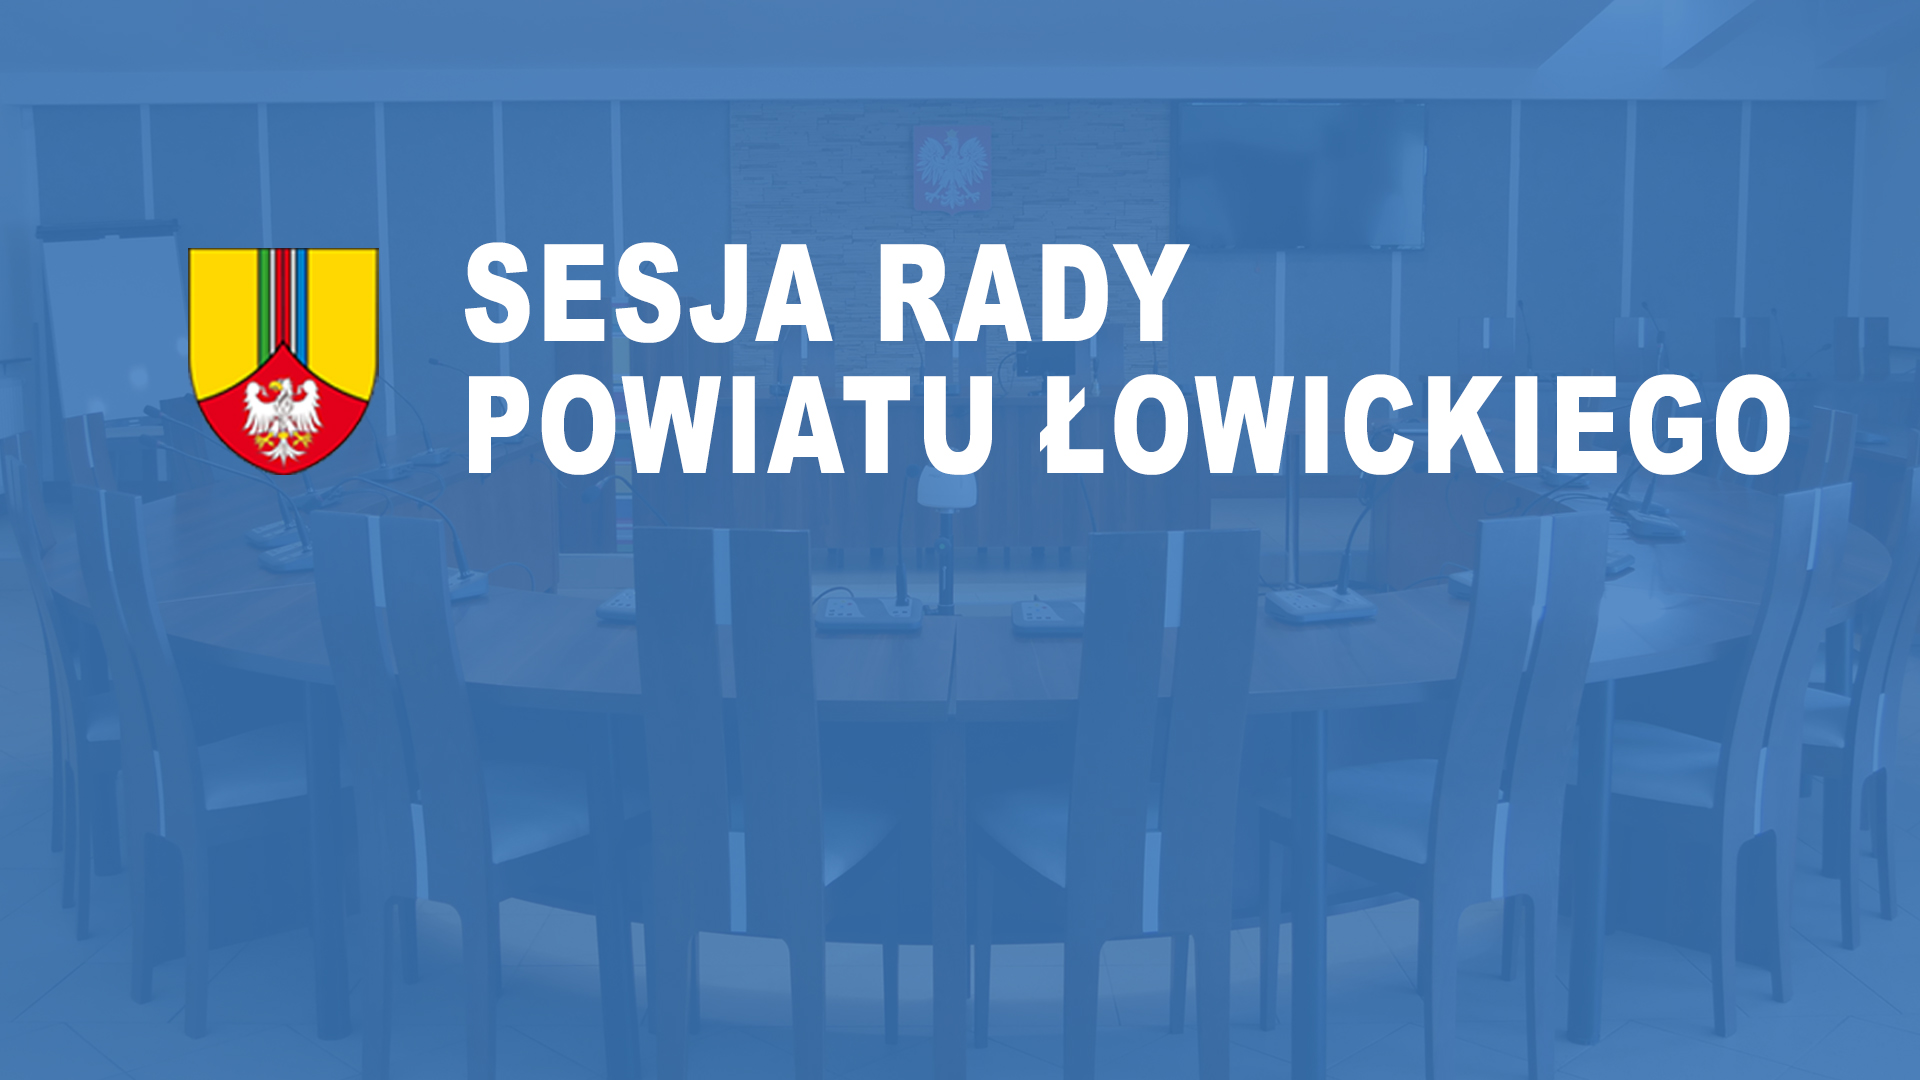 LI Sesja Rady Powiatu Łowickiego